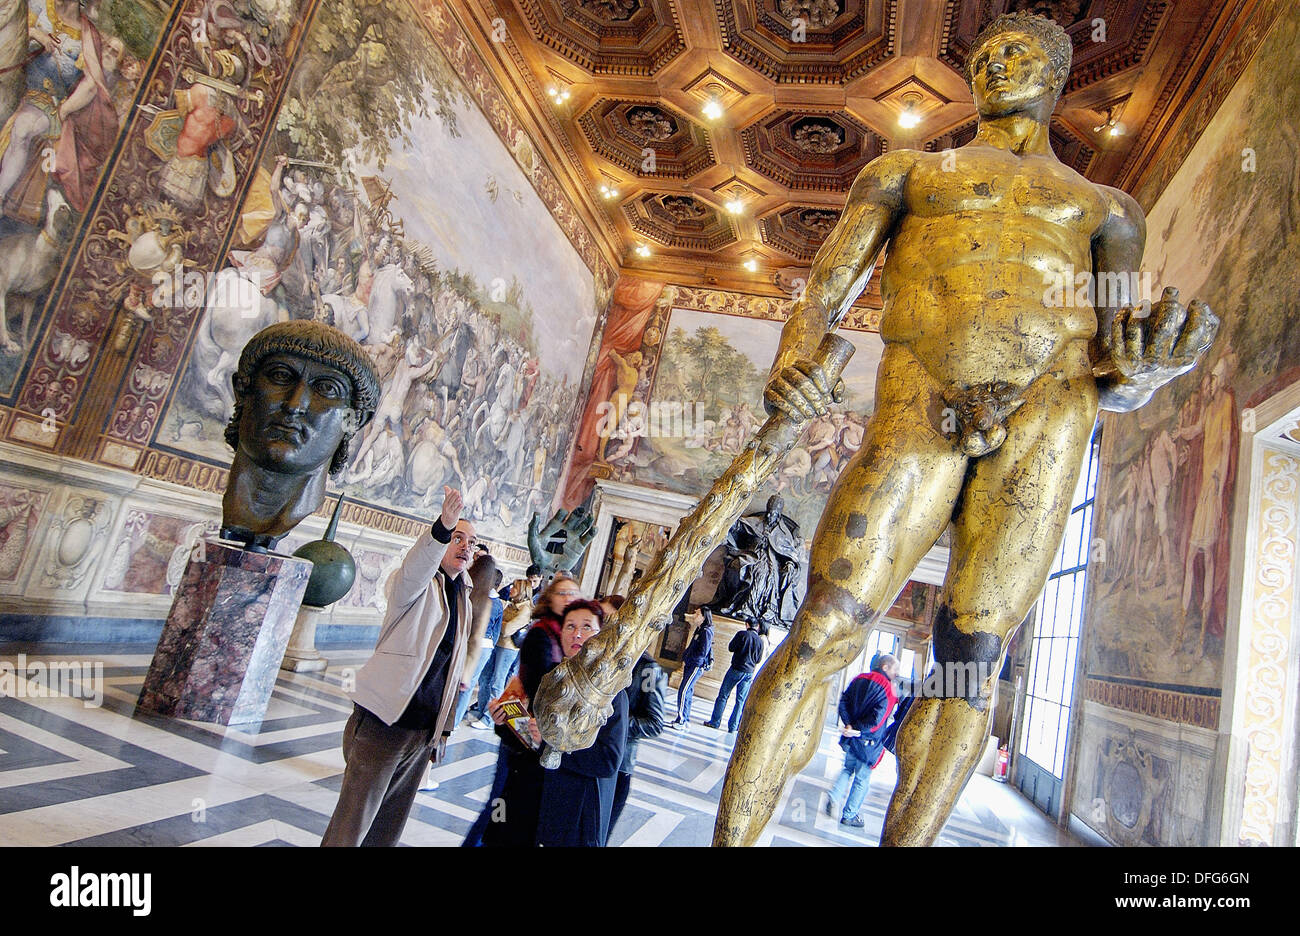 Statue en bronze doré de Hercules (2e siècle avant J.-C.) dans l'Orazi e Curiazi Prix, Musée du Capitole. Rome. Italie Banque D'Images